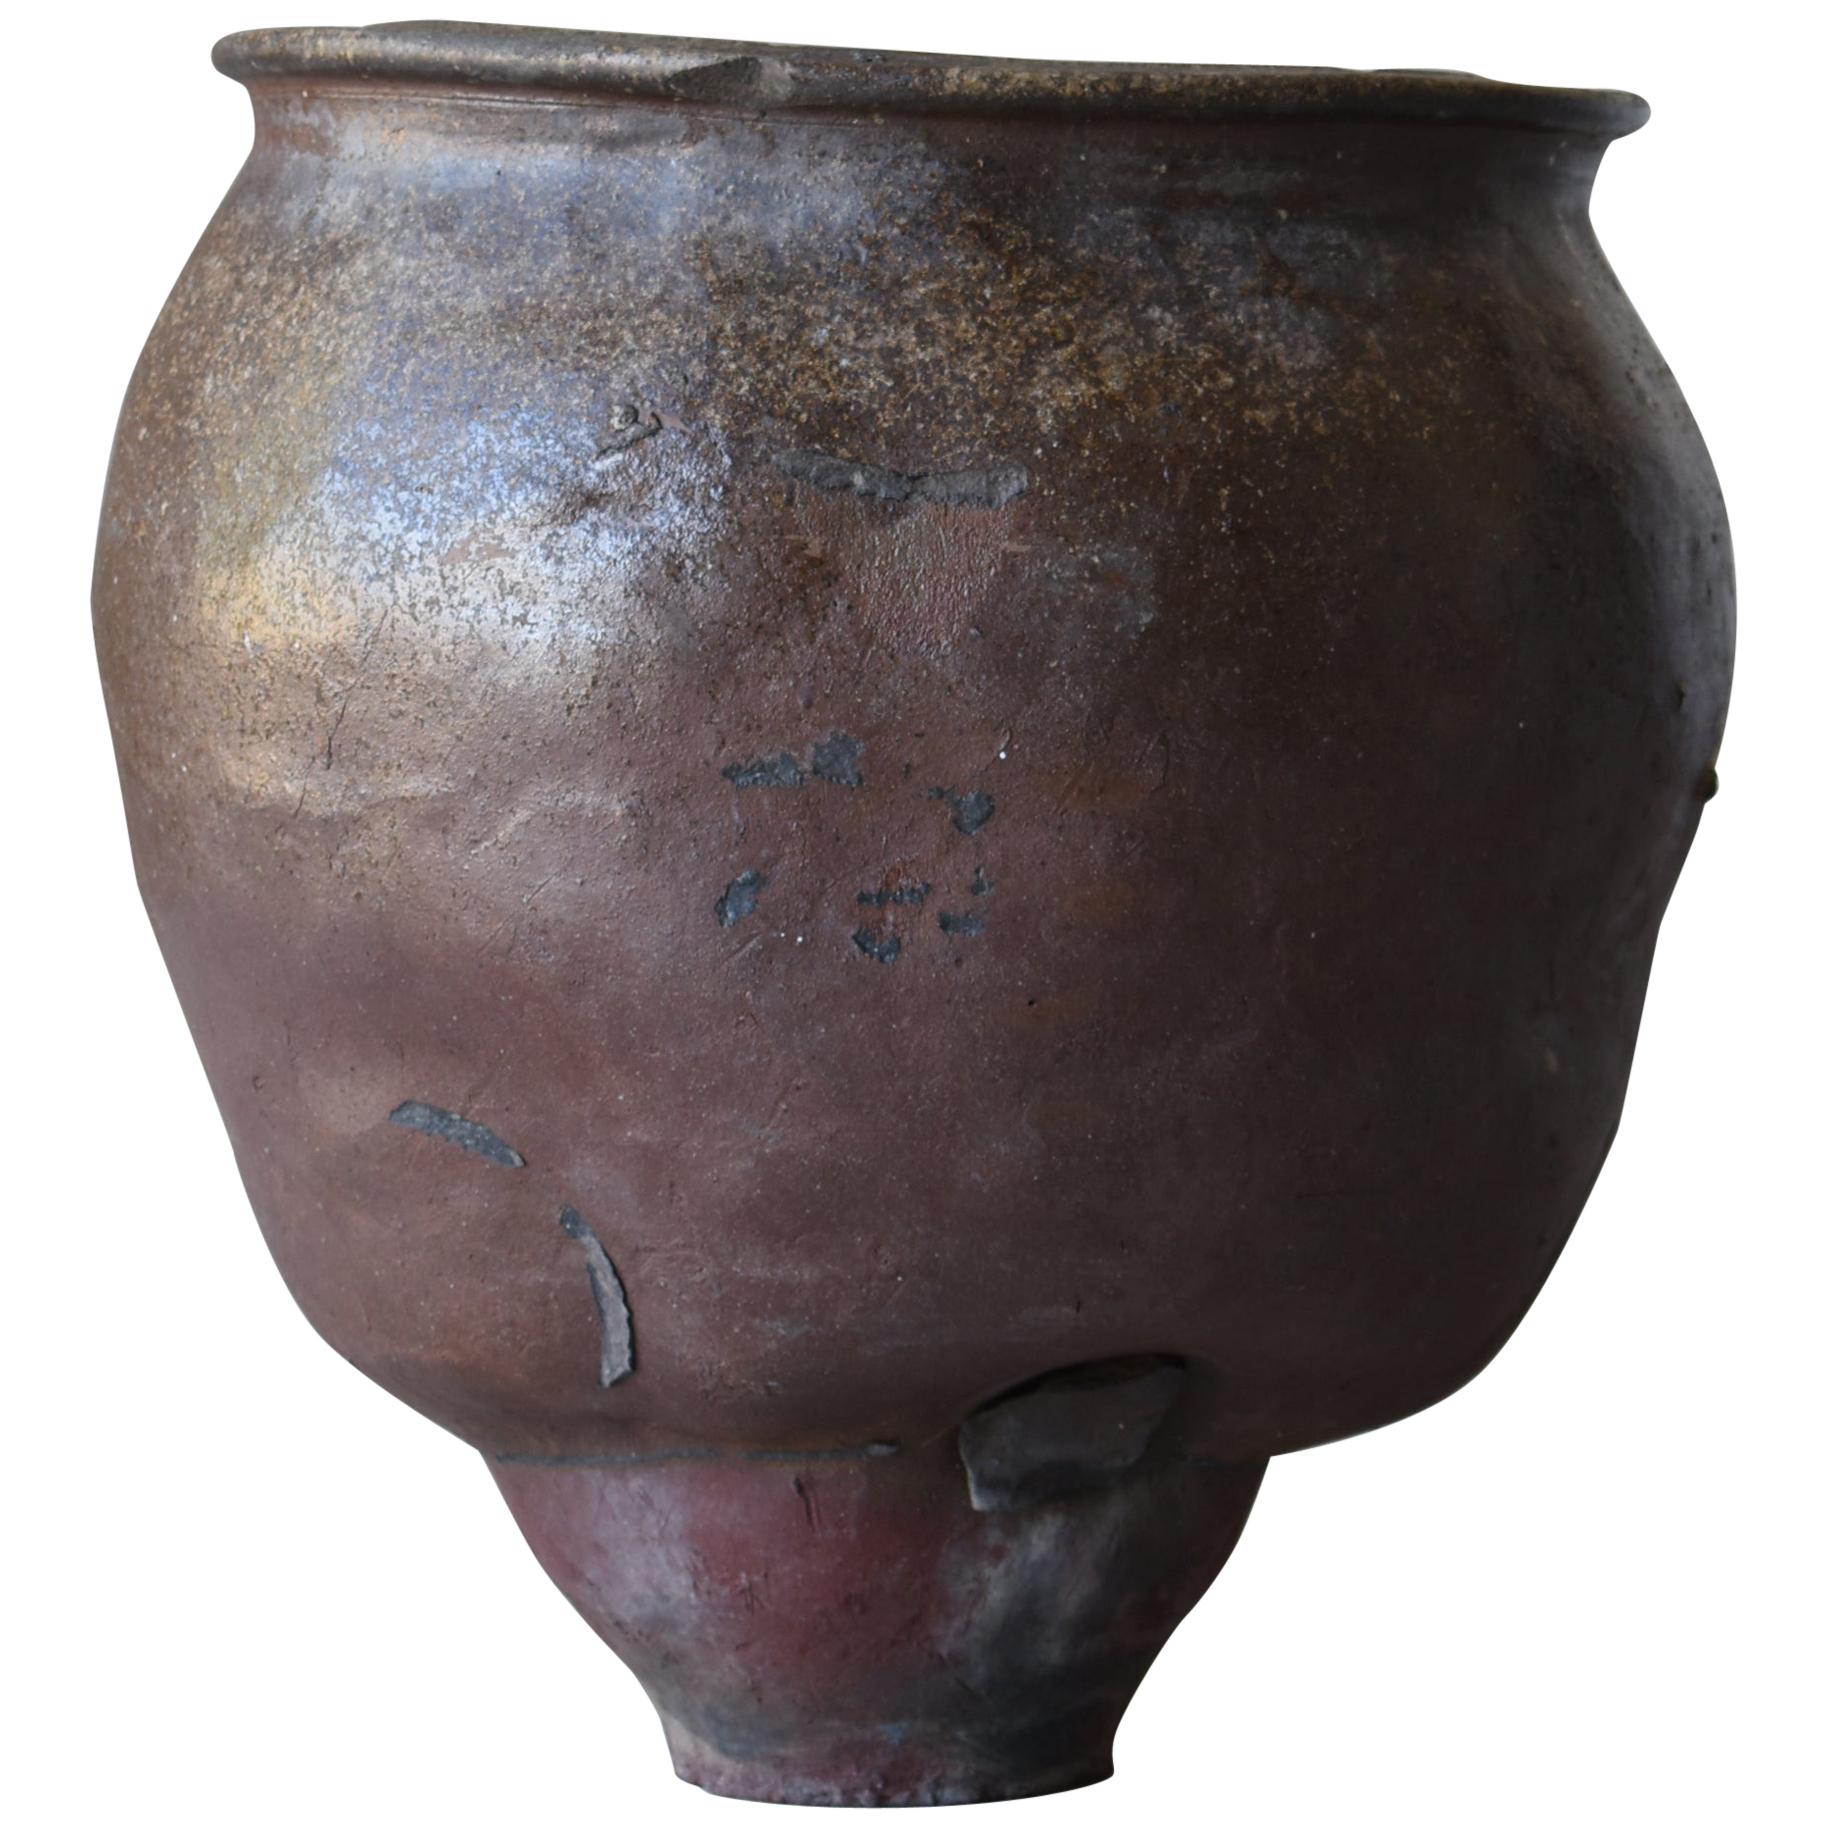 Japanese Old Pottery 1700s-1800s/Antique Flower Vase Vessel Jar Tsubo Wabisabi